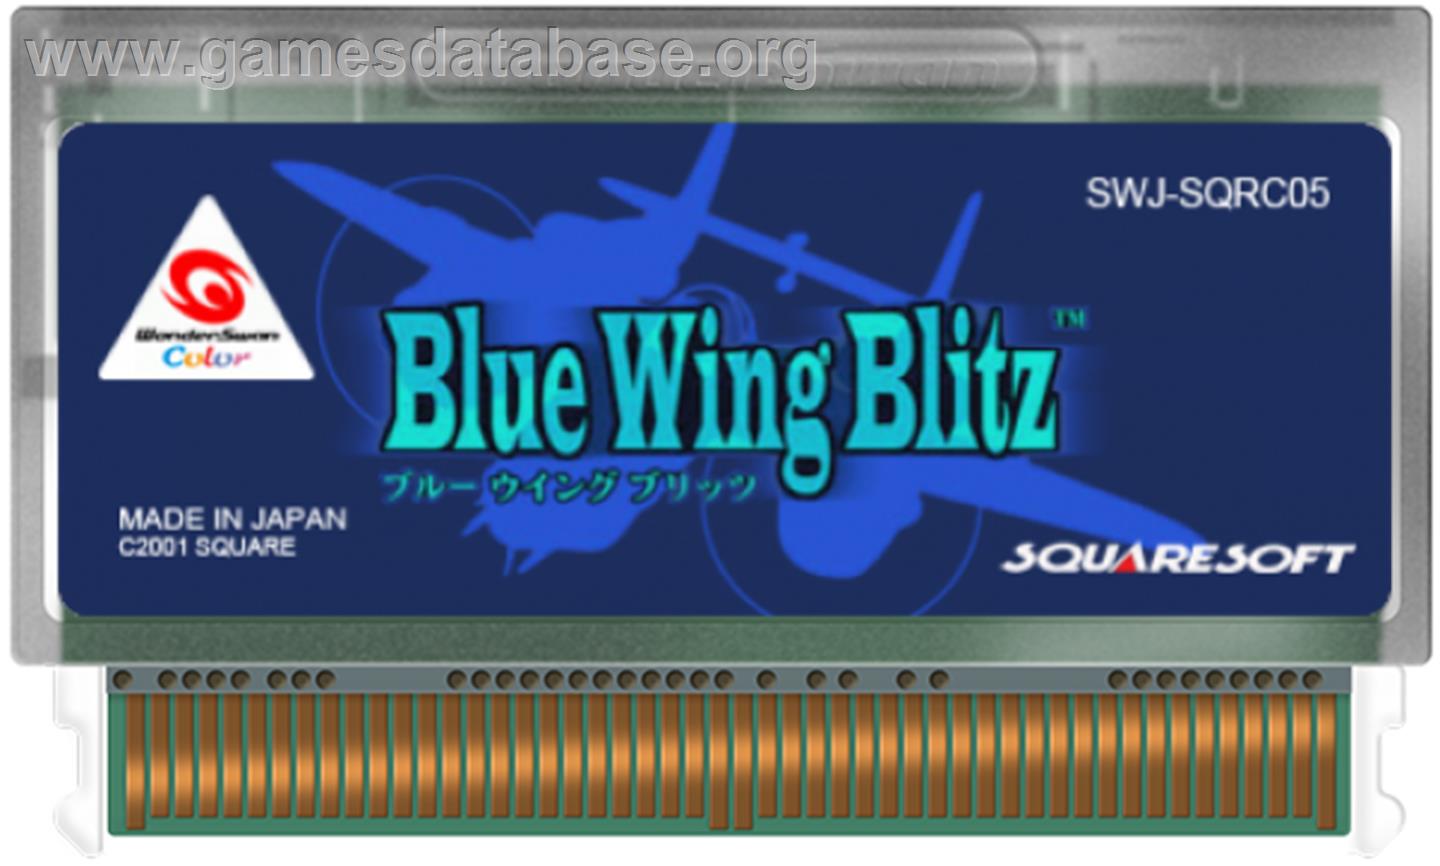 Blue Wing Blitz - Bandai WonderSwan Color - Artwork - Cartridge